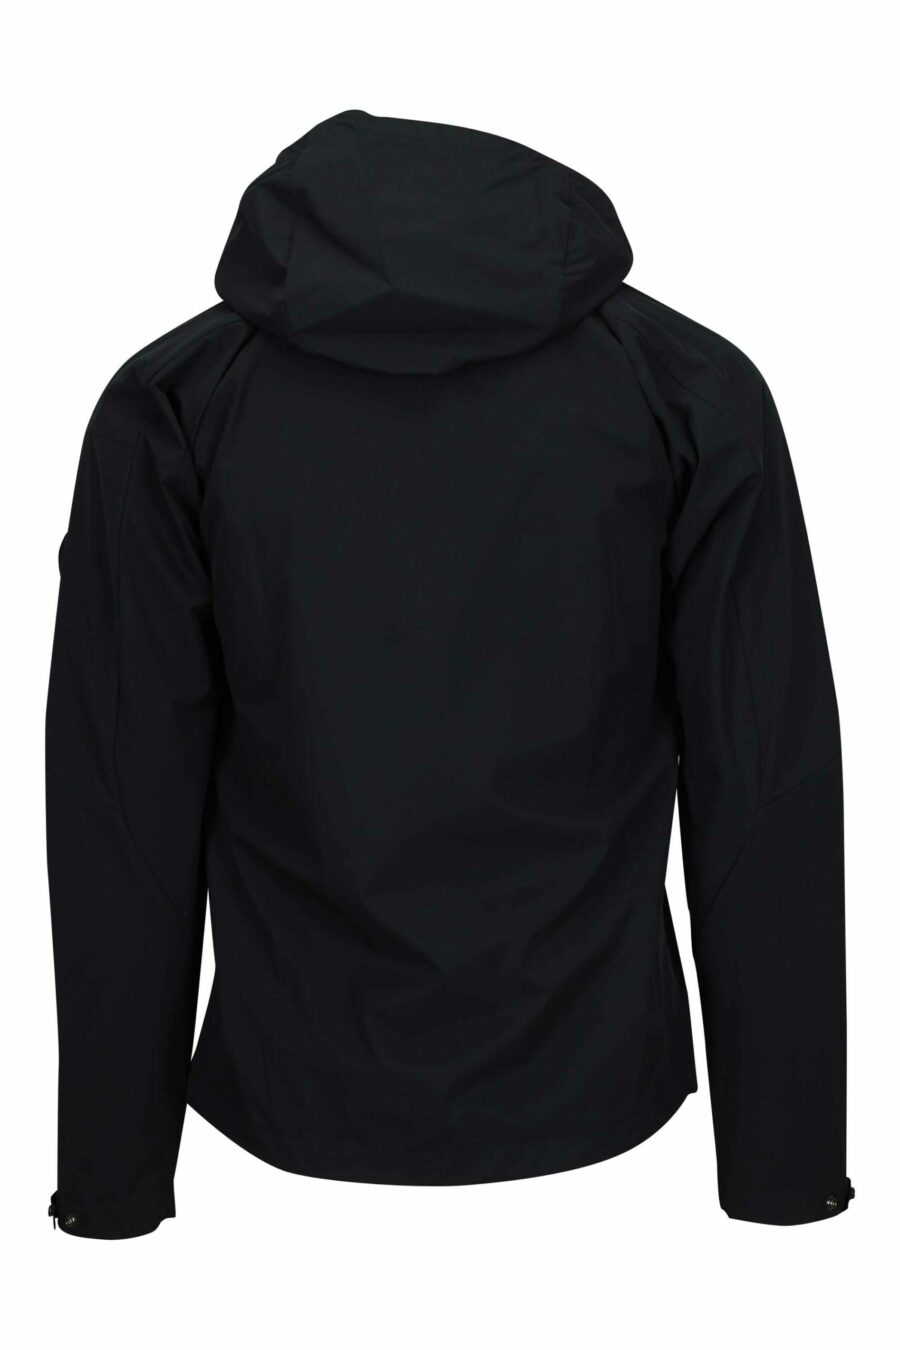 Veste noire avec capuche et objectif minilogue - 108276 à l'échelle